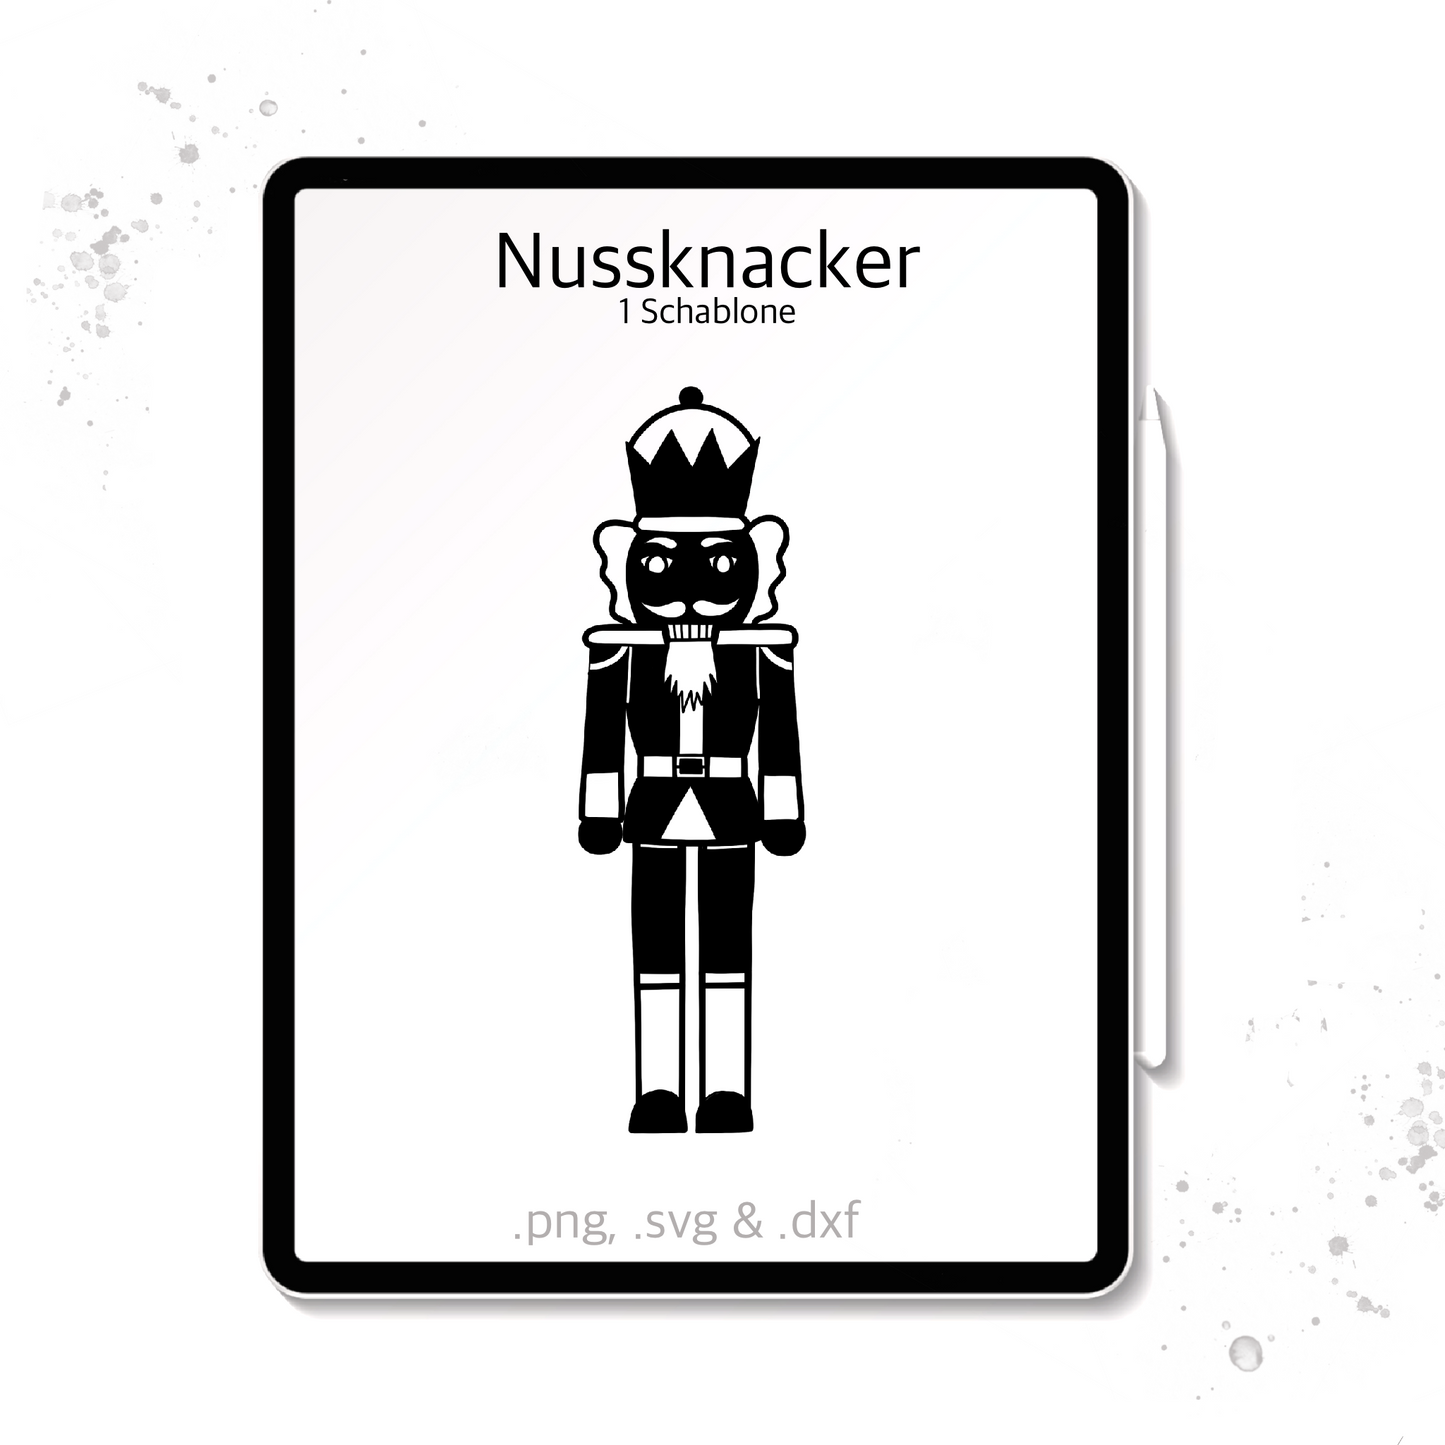 Plotterdatei / Laserdatei Schablonen "Nussknacker" (.dxf, .svg und .png)